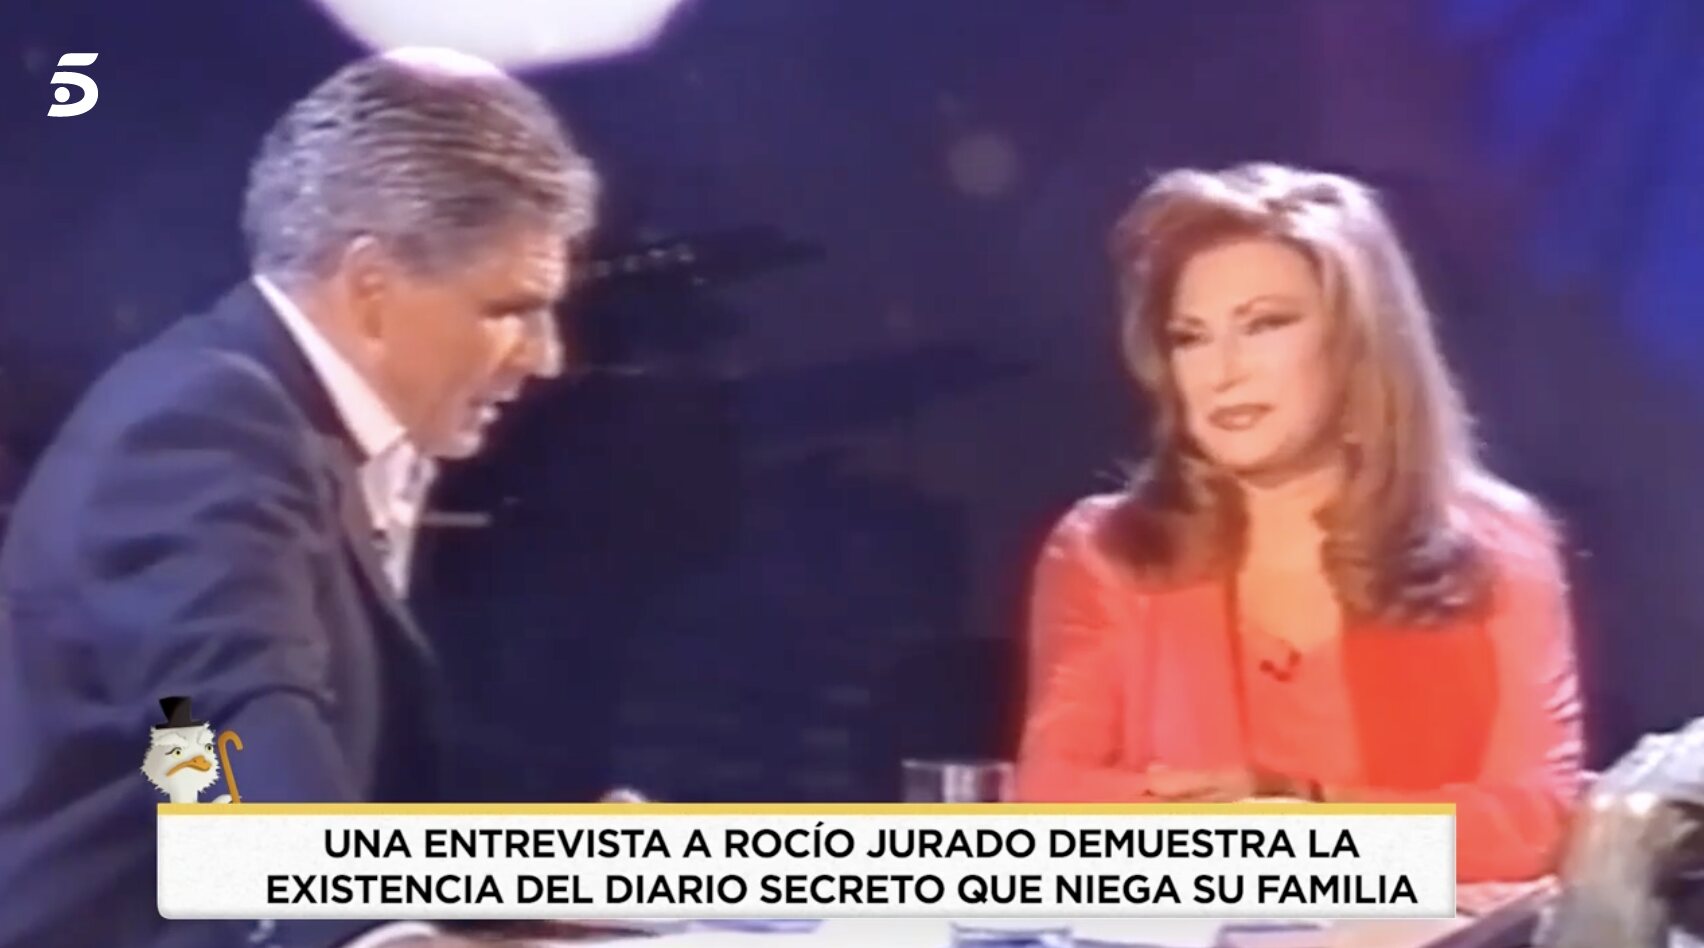 Pedro Ruiz hacía alusión a la afición de Rocío Jurado de escribir sus pensamientos | Foto: Telecinco.es